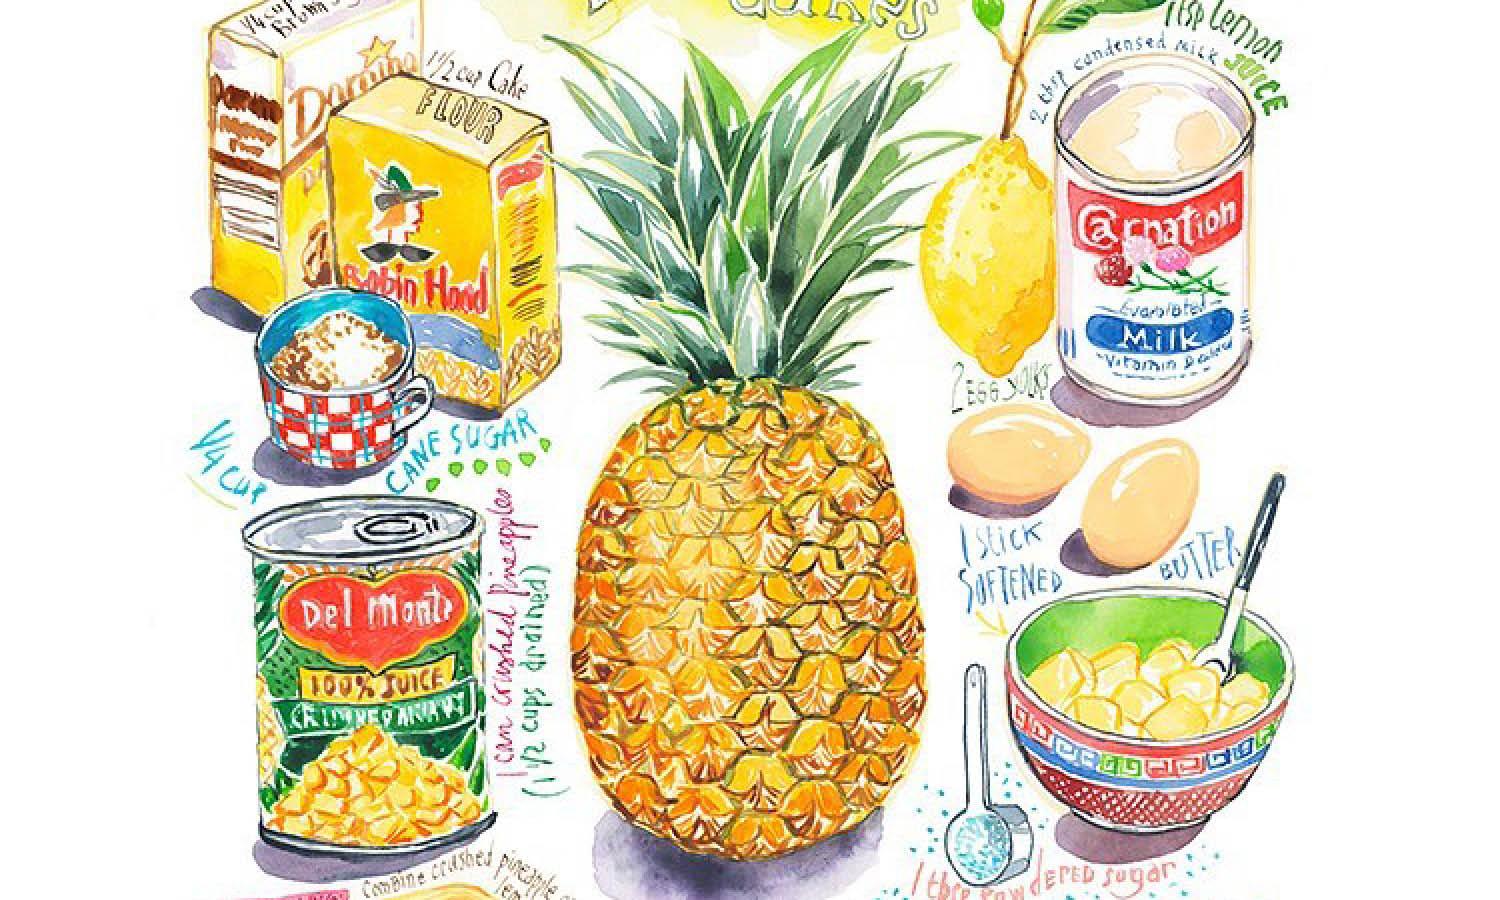 30 Best Pineapple Illustration Design Ideas You Should Check - Kreafolk